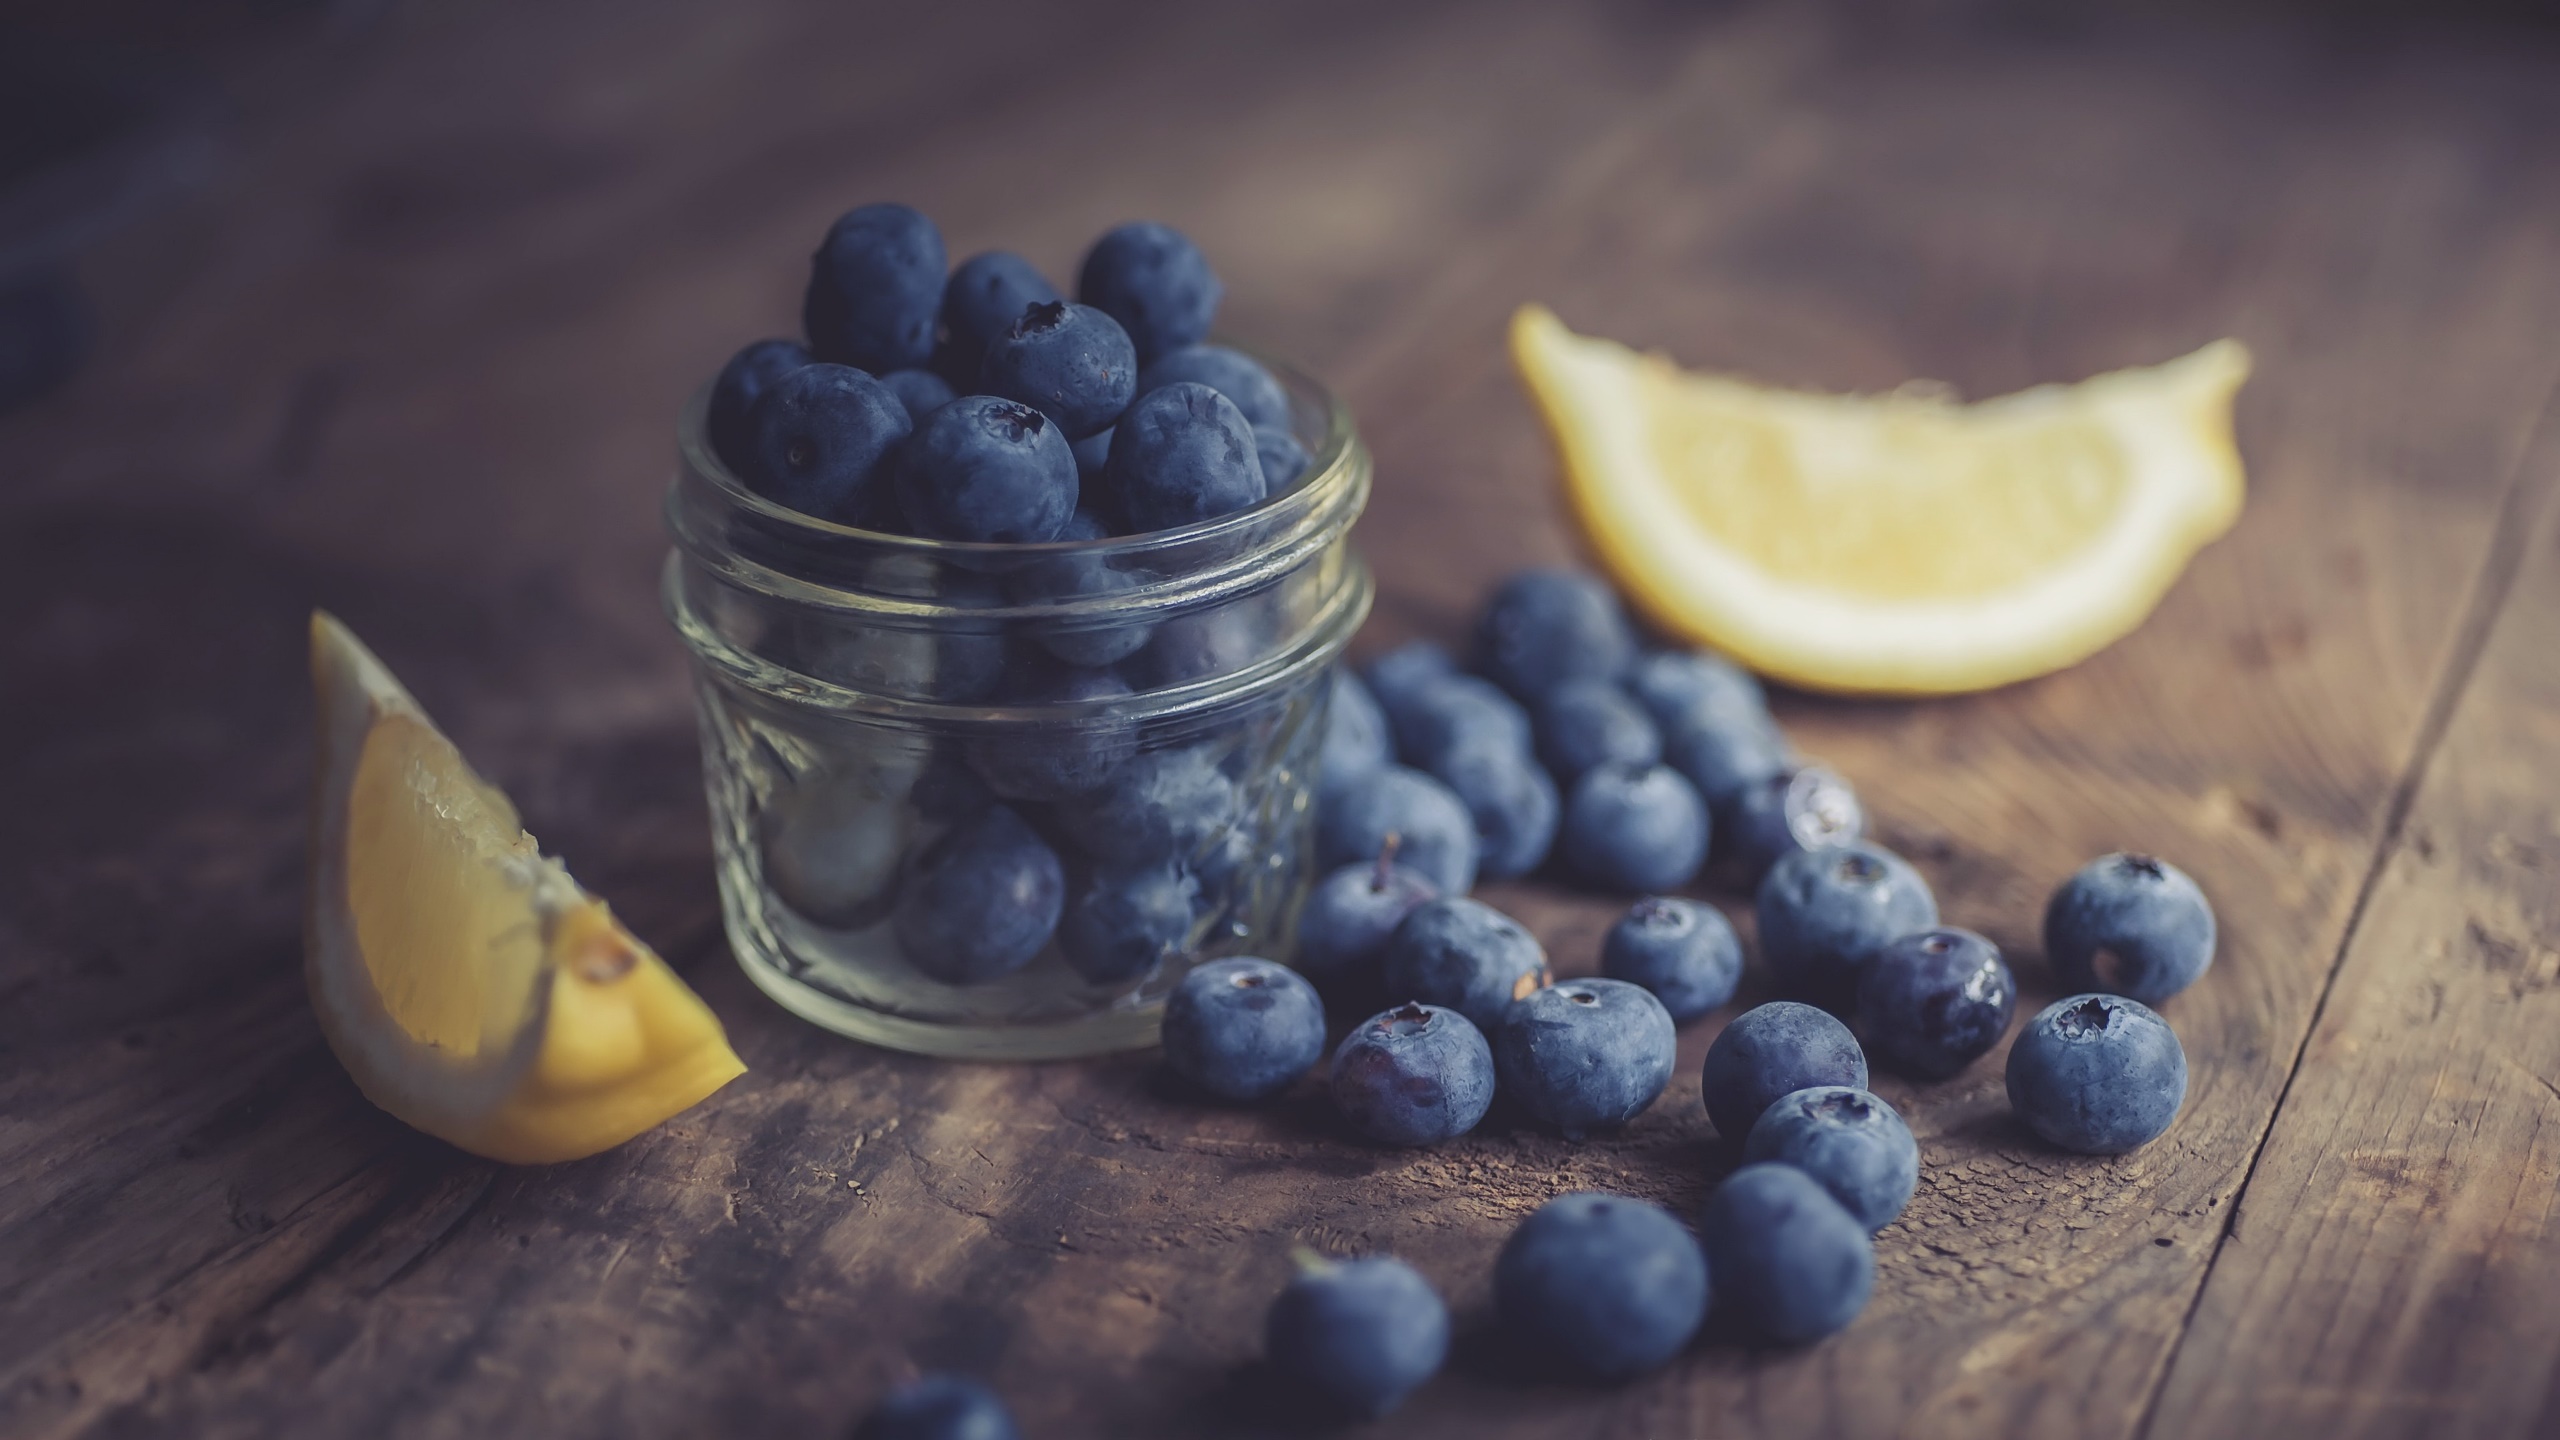 General 2560x1440 food fruit berries blueberries lemons jar wooden surface closeup